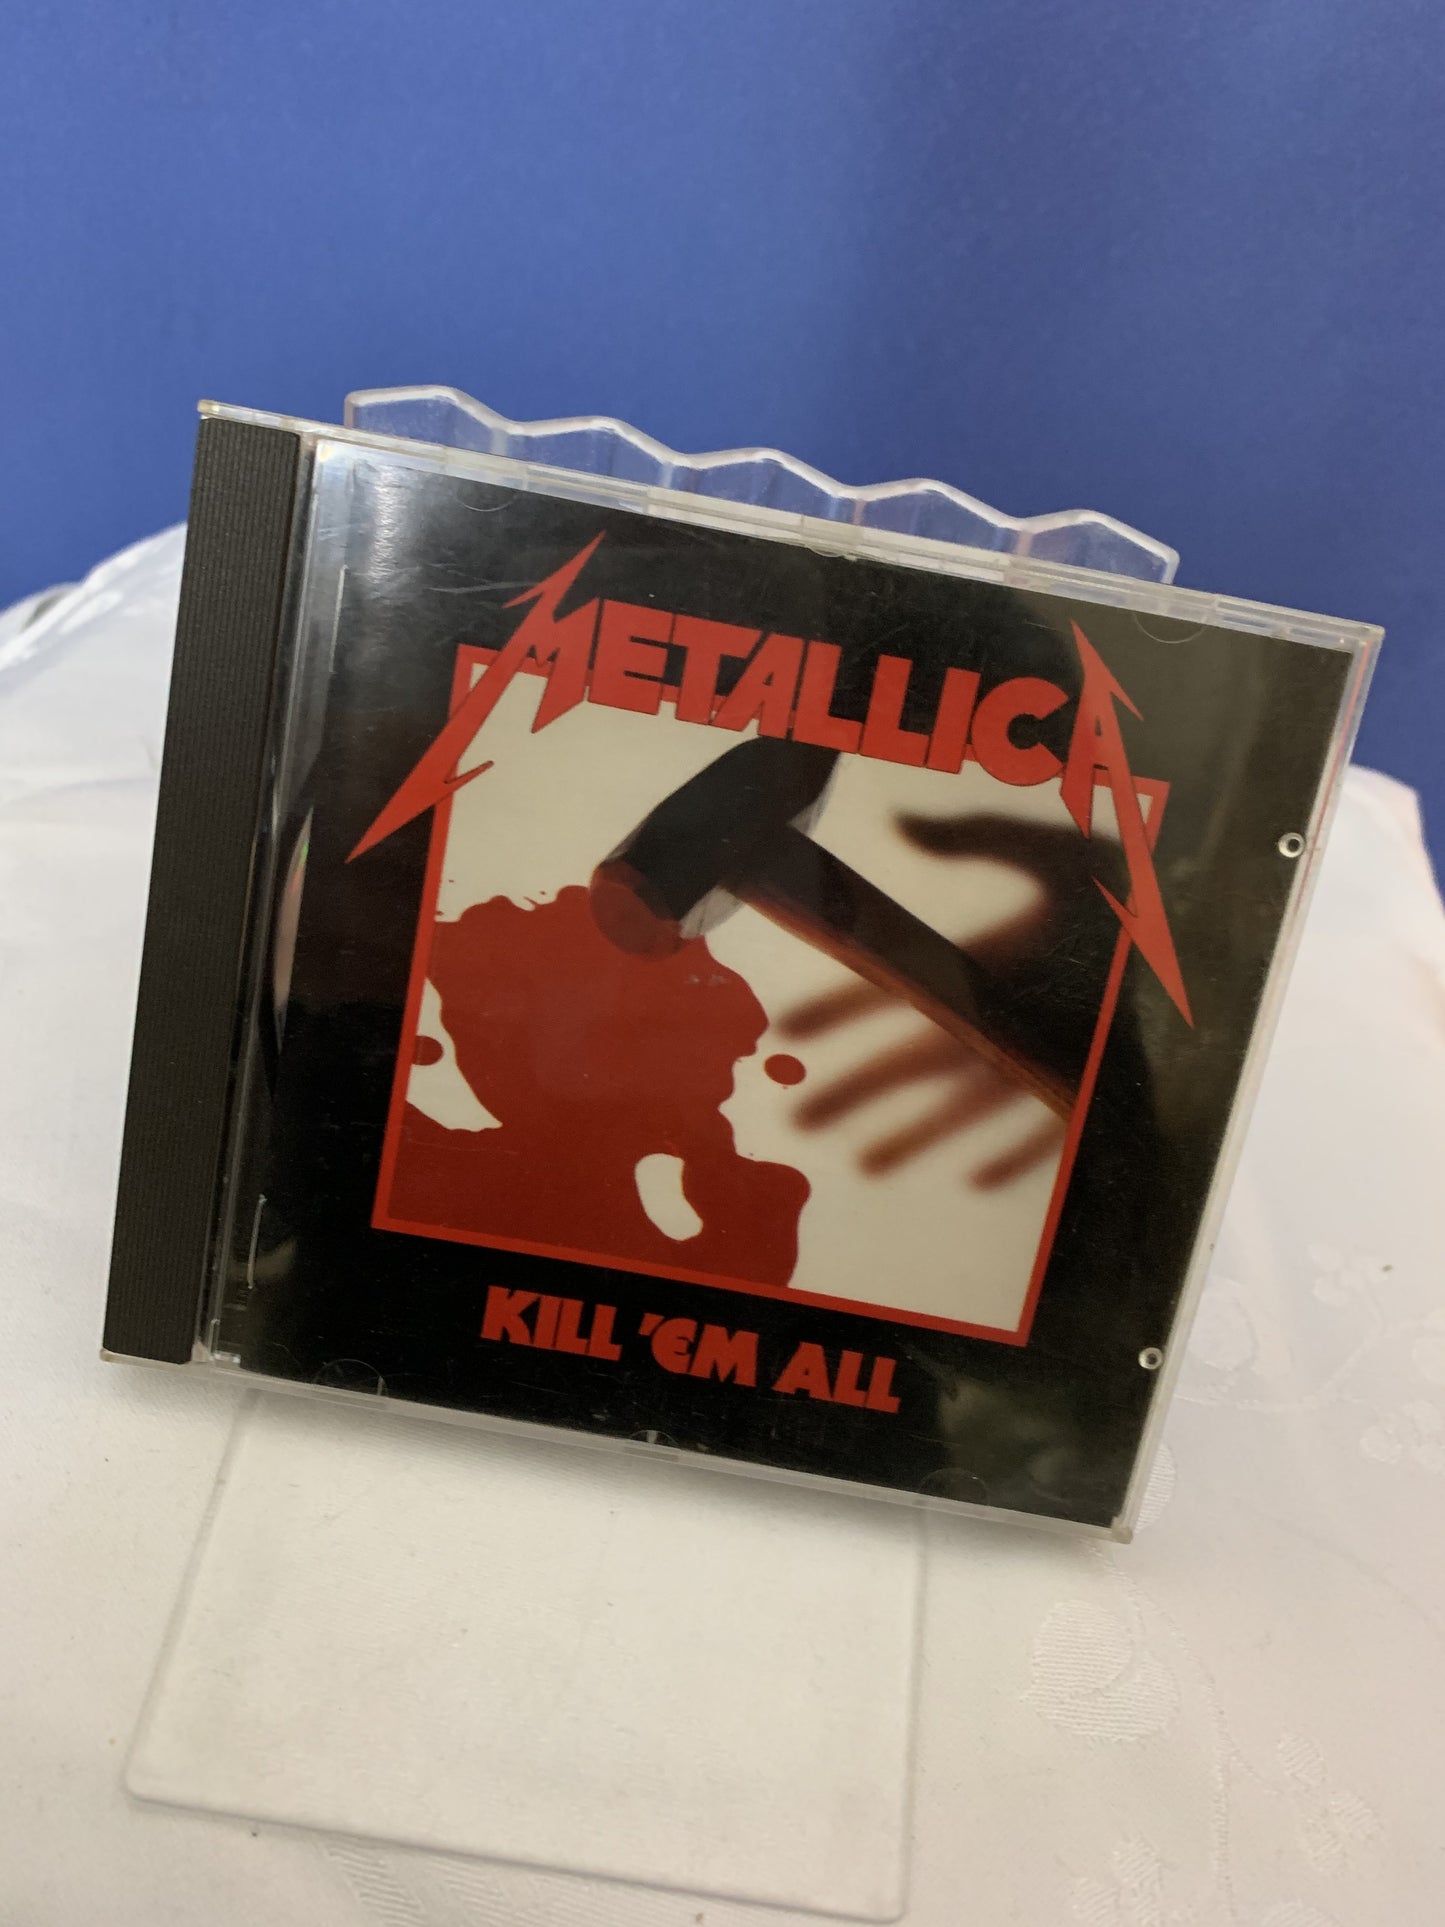 Metallica Kill' em all CD